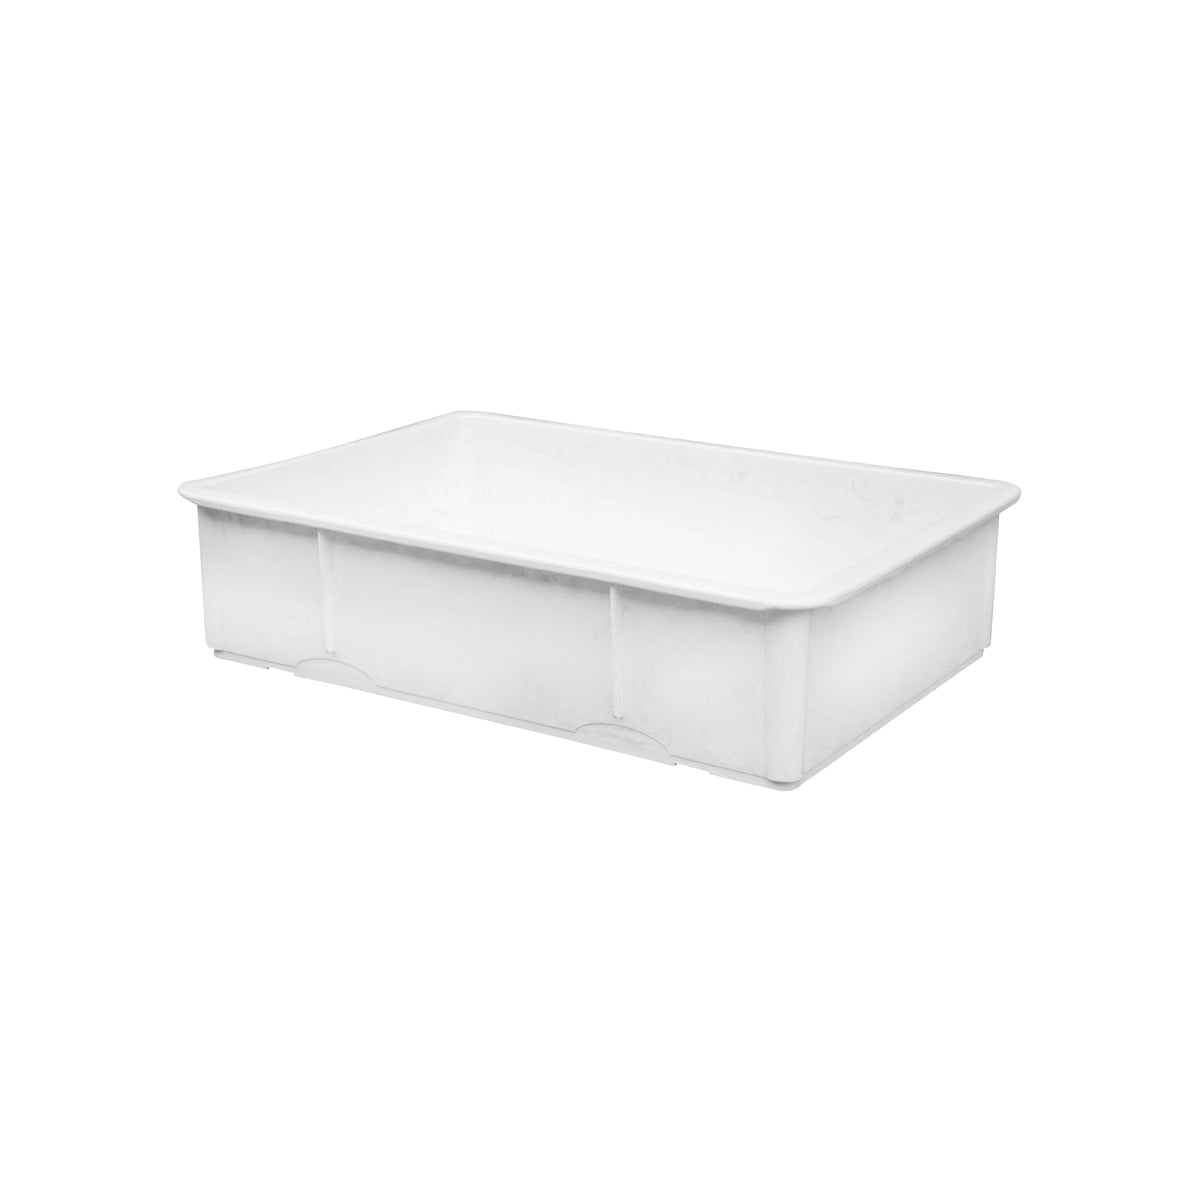 JW-DB18266 Jiwins Dough Storage Box White Polypropylene 655x455x163mm Tomkin Australia Hospitality Supplies